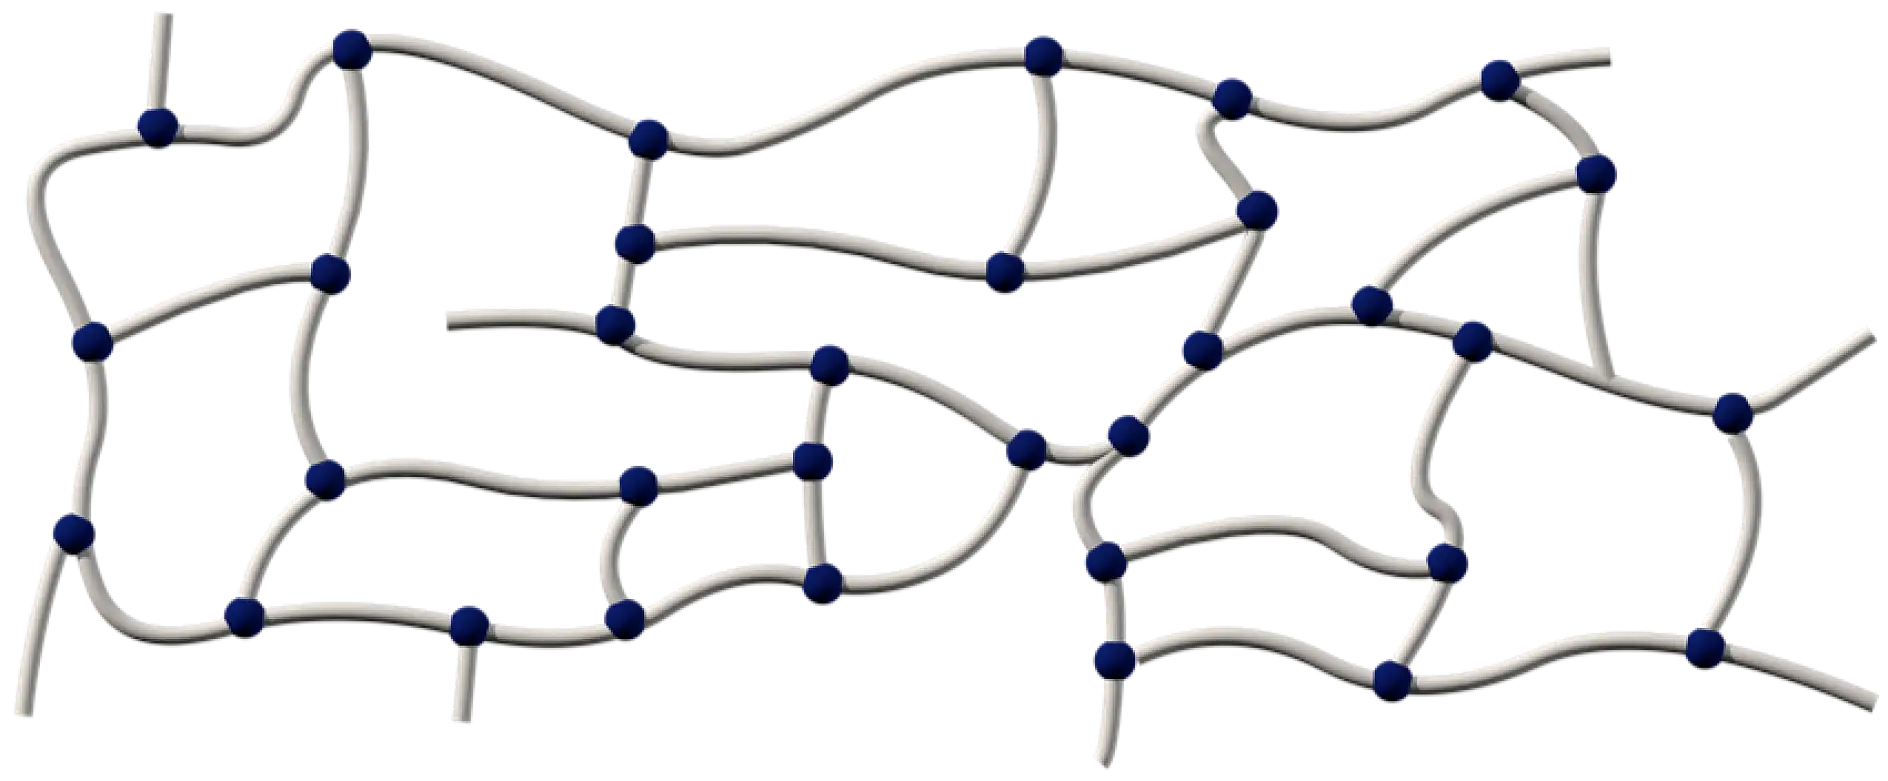 Akrylatbindemedel består av långa polymerkedjor som tvärbinds med olika metoder: kemiskt, genom UV-strålning eller genom elektronstrålehärdning